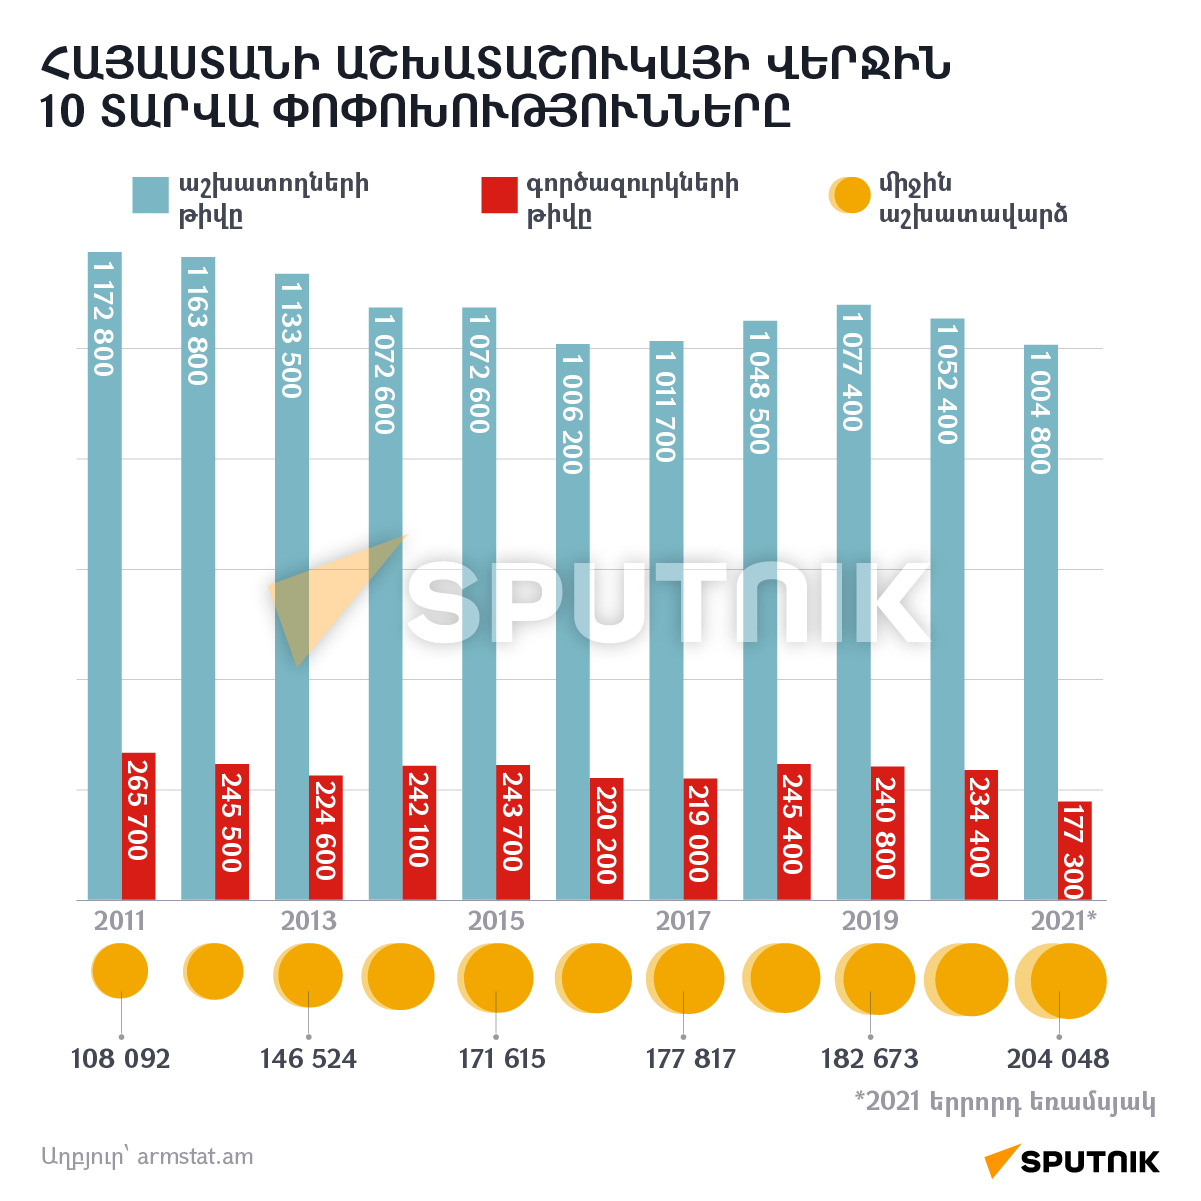 Հայաստանի աշխատաշուկայի վերջին 10 տարվա փոփոխությունները - Sputnik Արմենիա